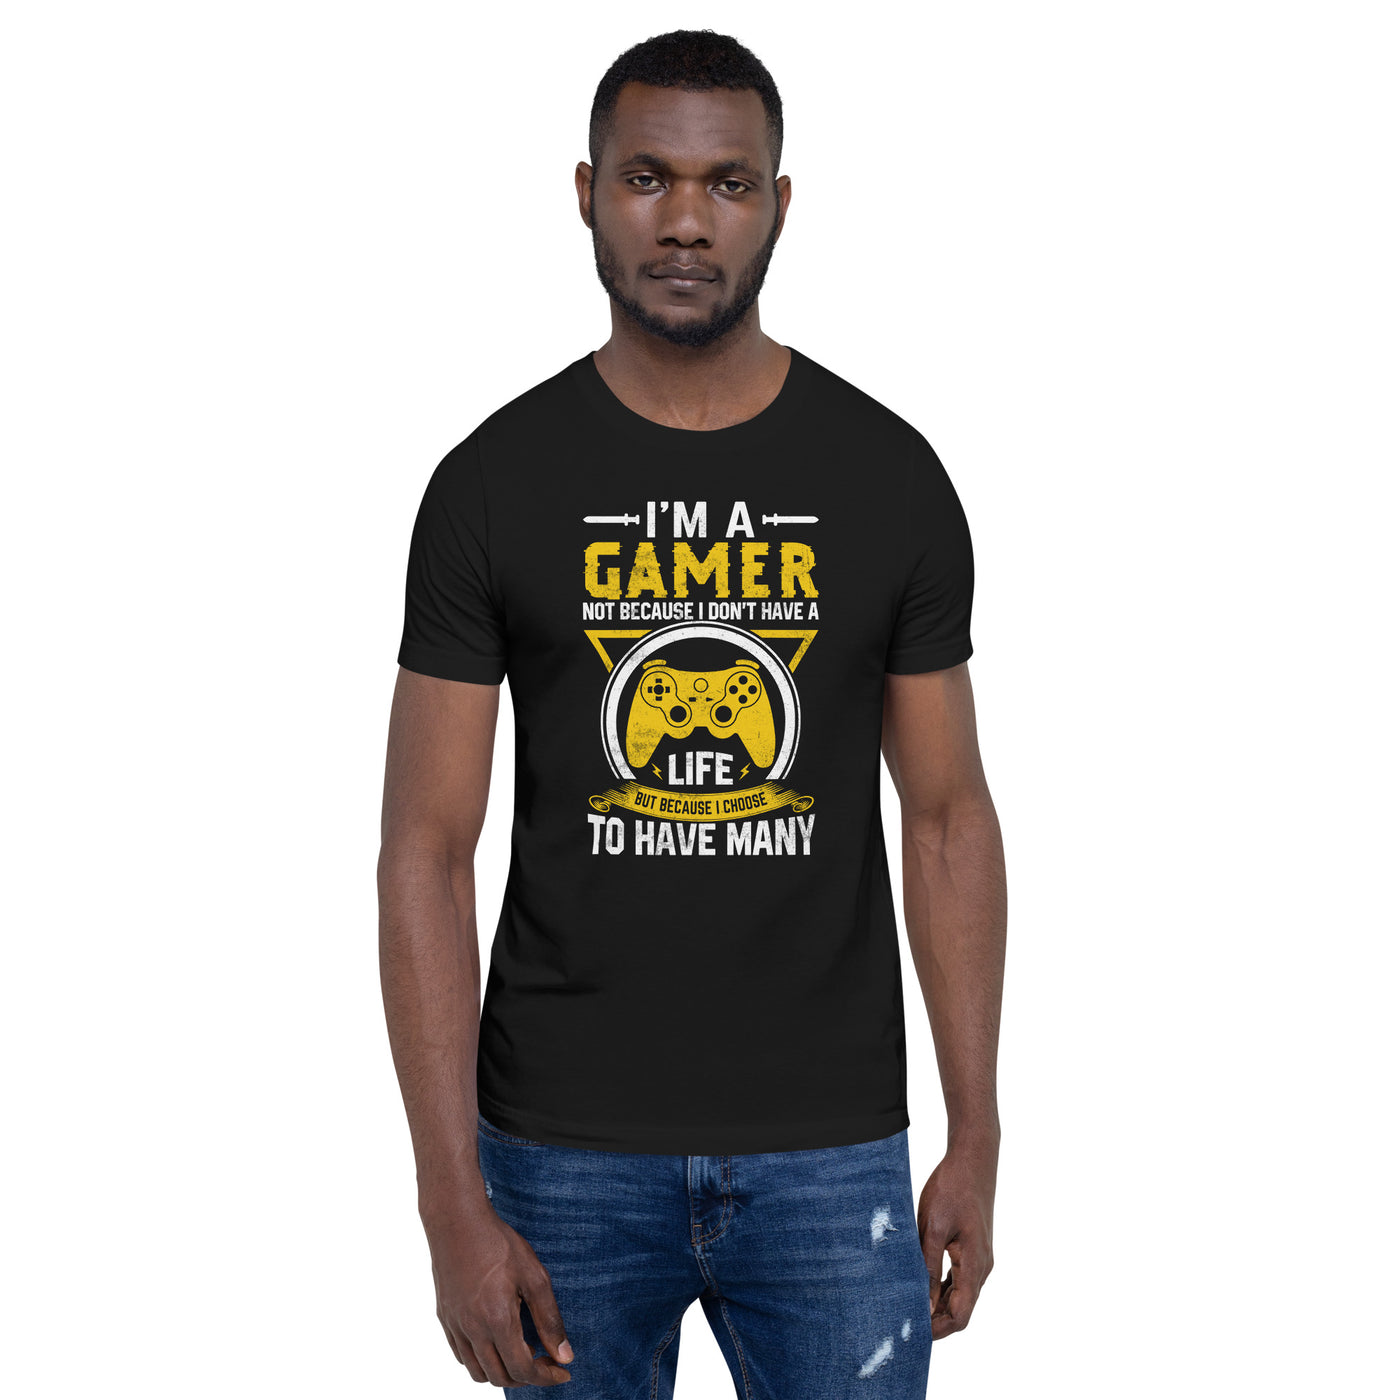 I am a Gamer - Unisex t-shirt